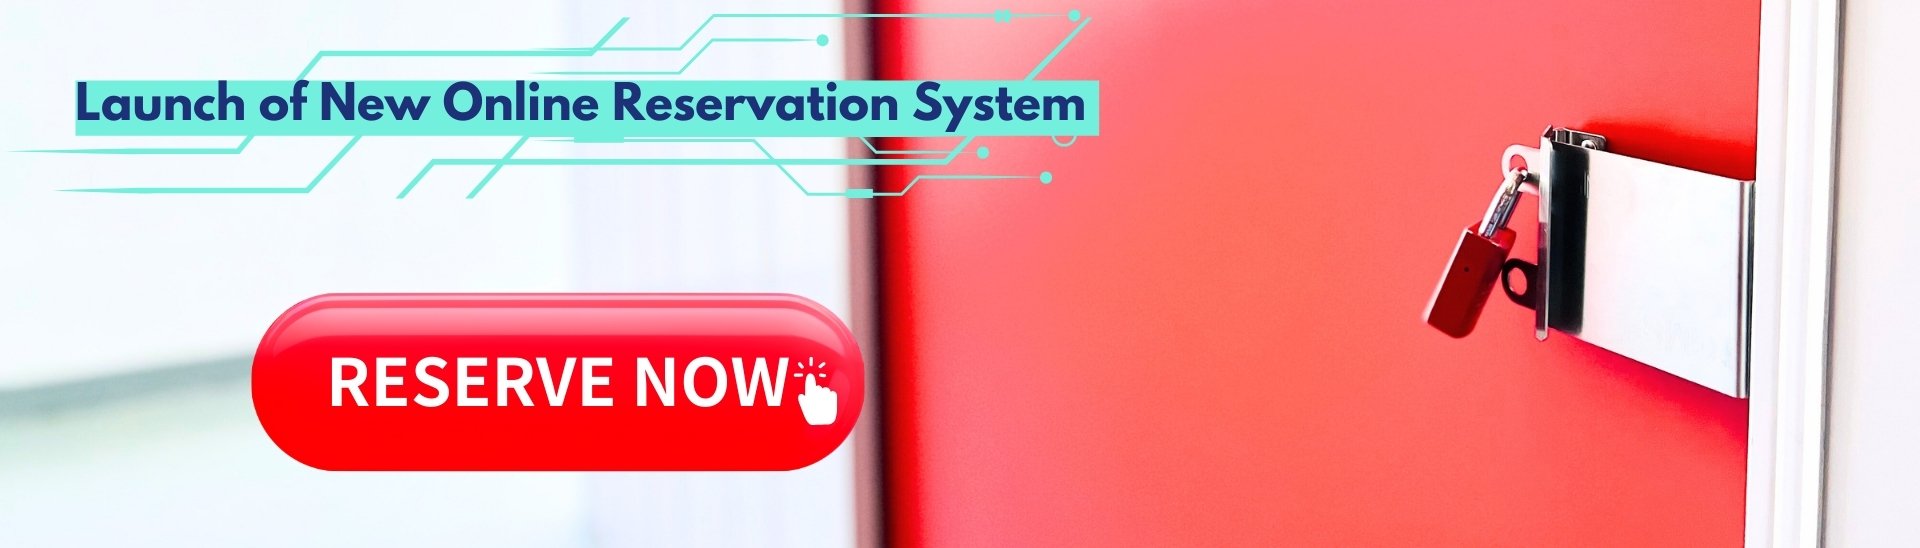 Online reservation system 